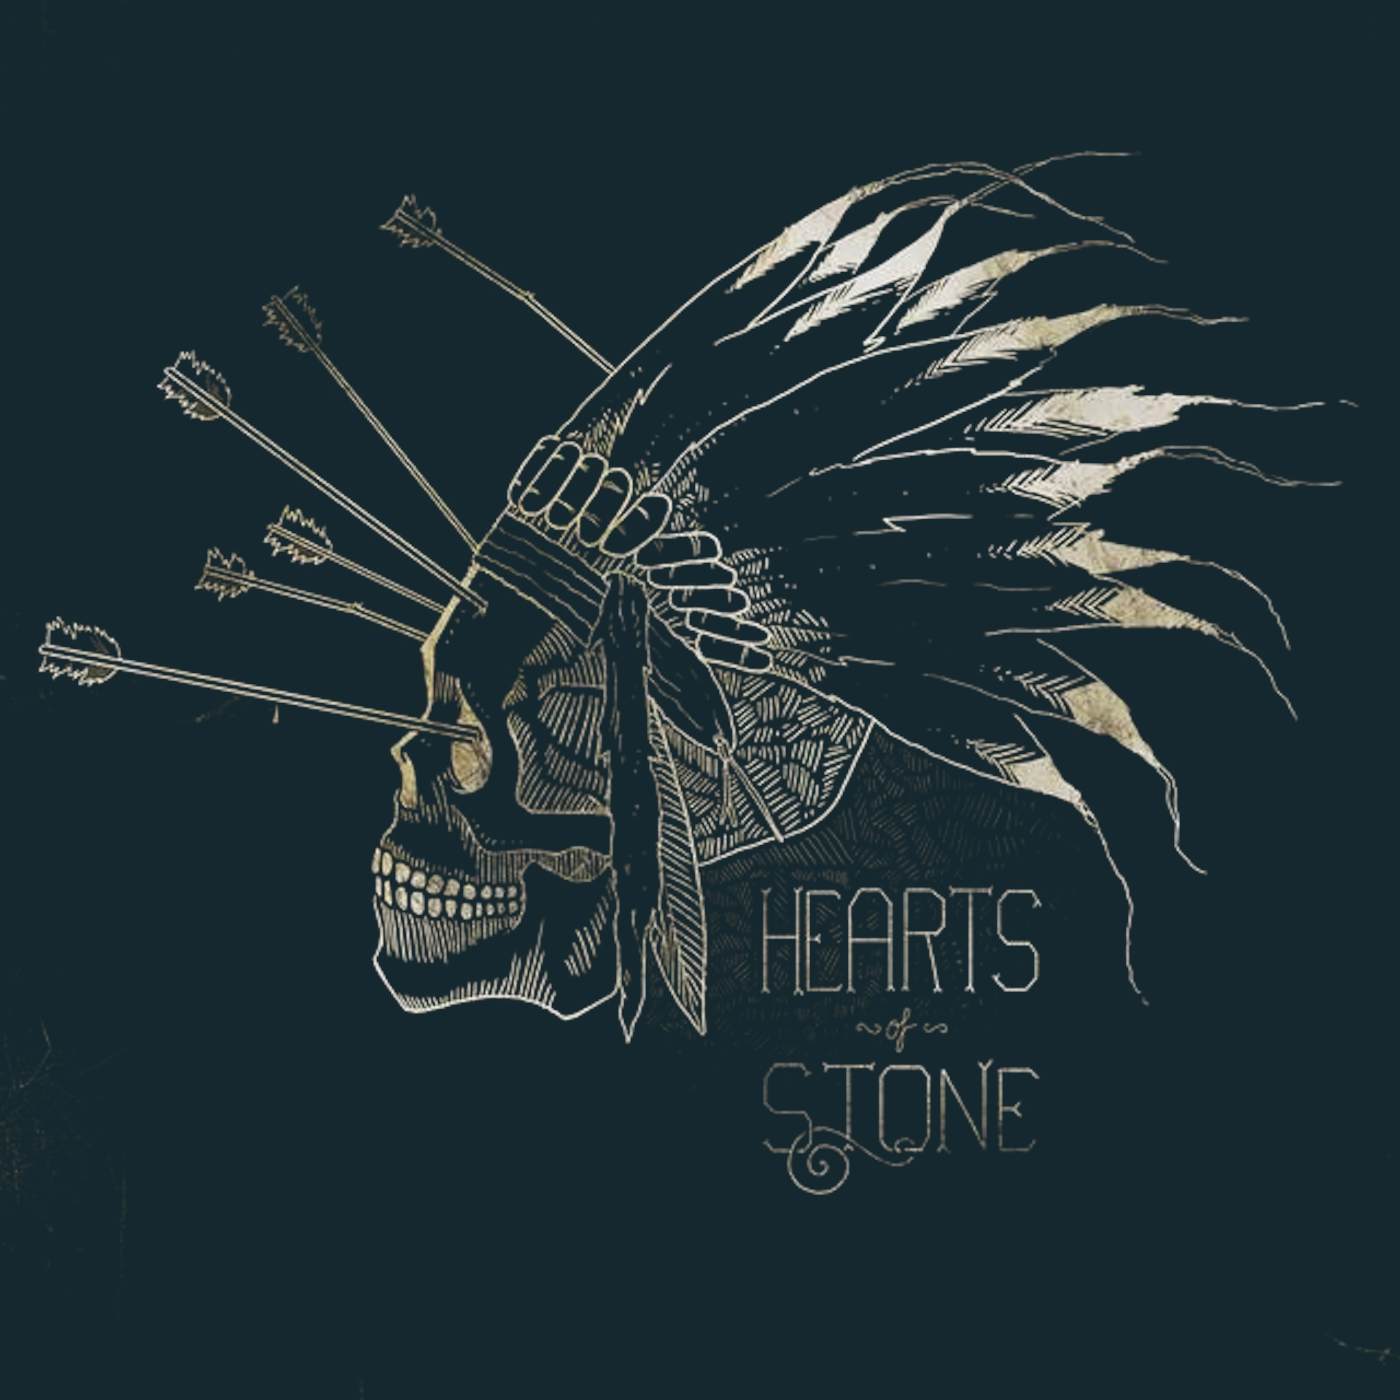 Hearts Of Stone